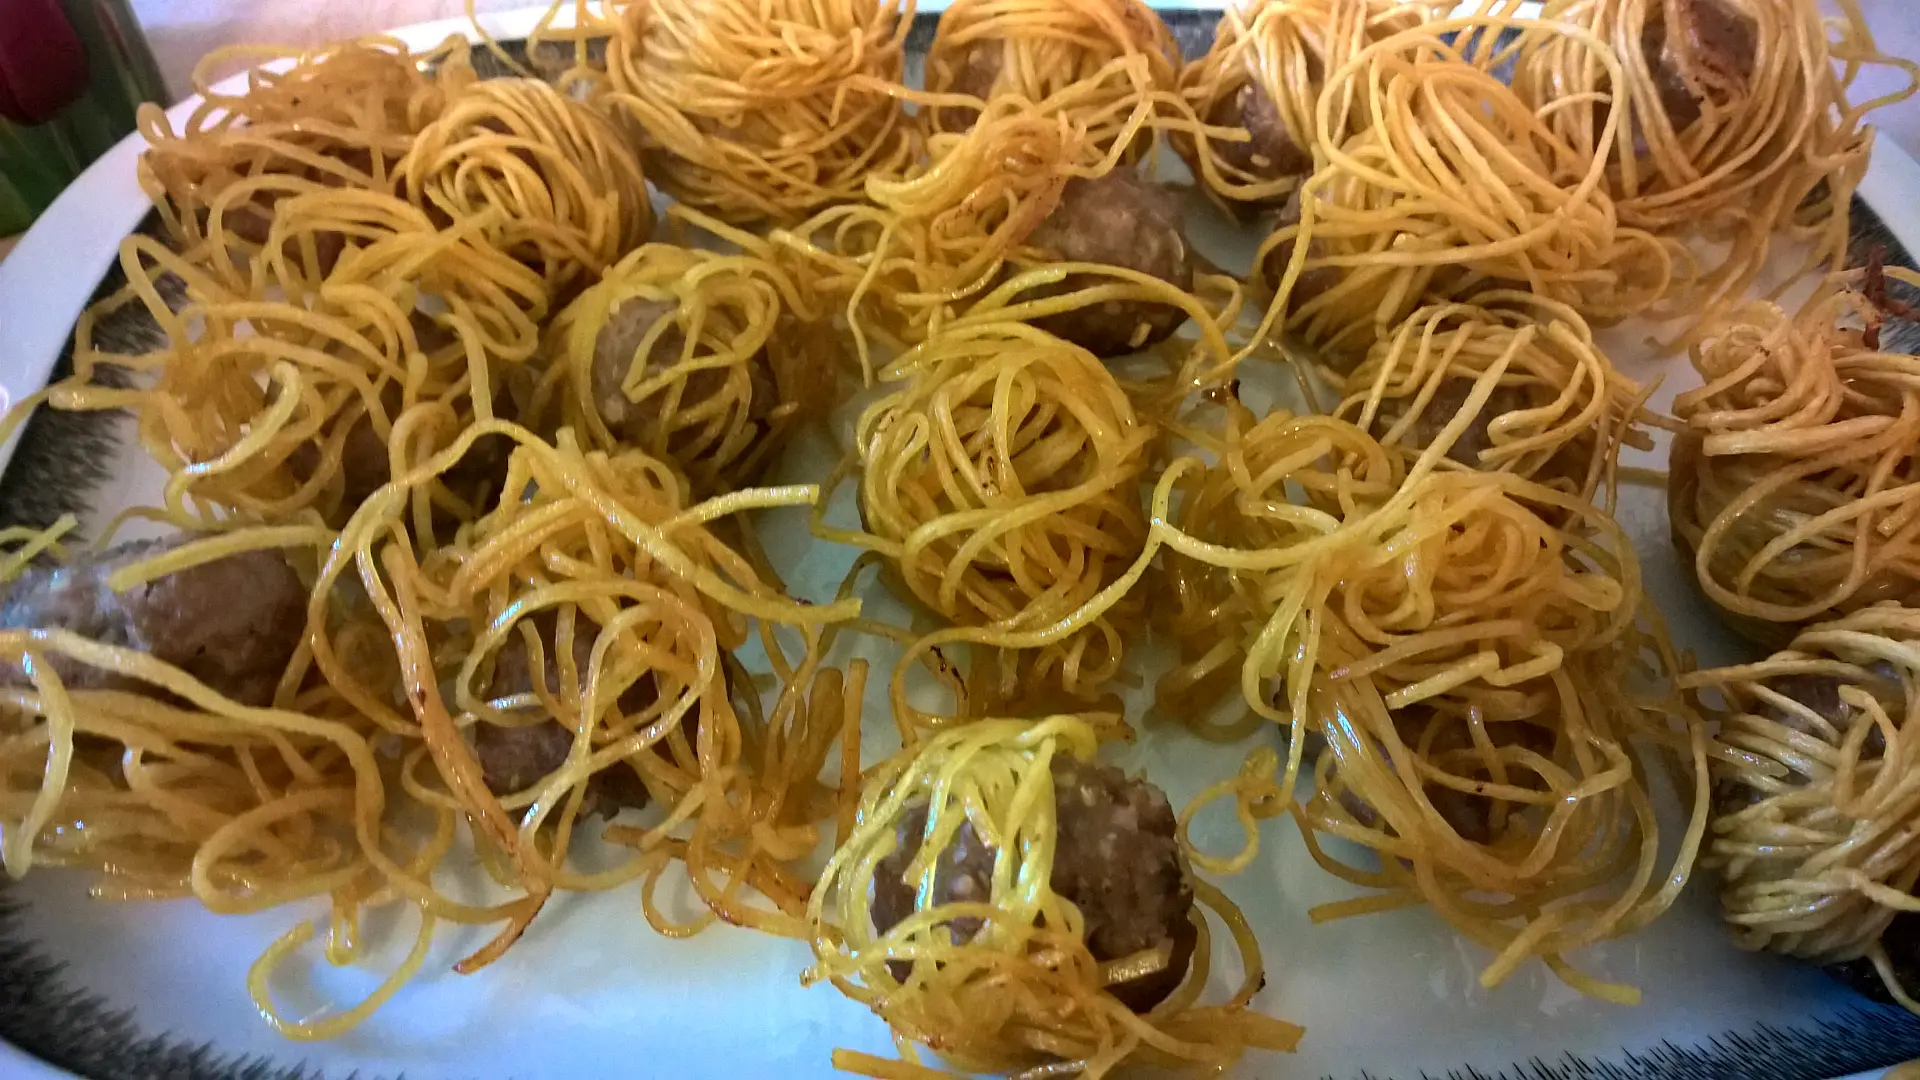 Hackfleischbällchen in gelben Nudeln – หมูโสร่ง (Muh Sarong)